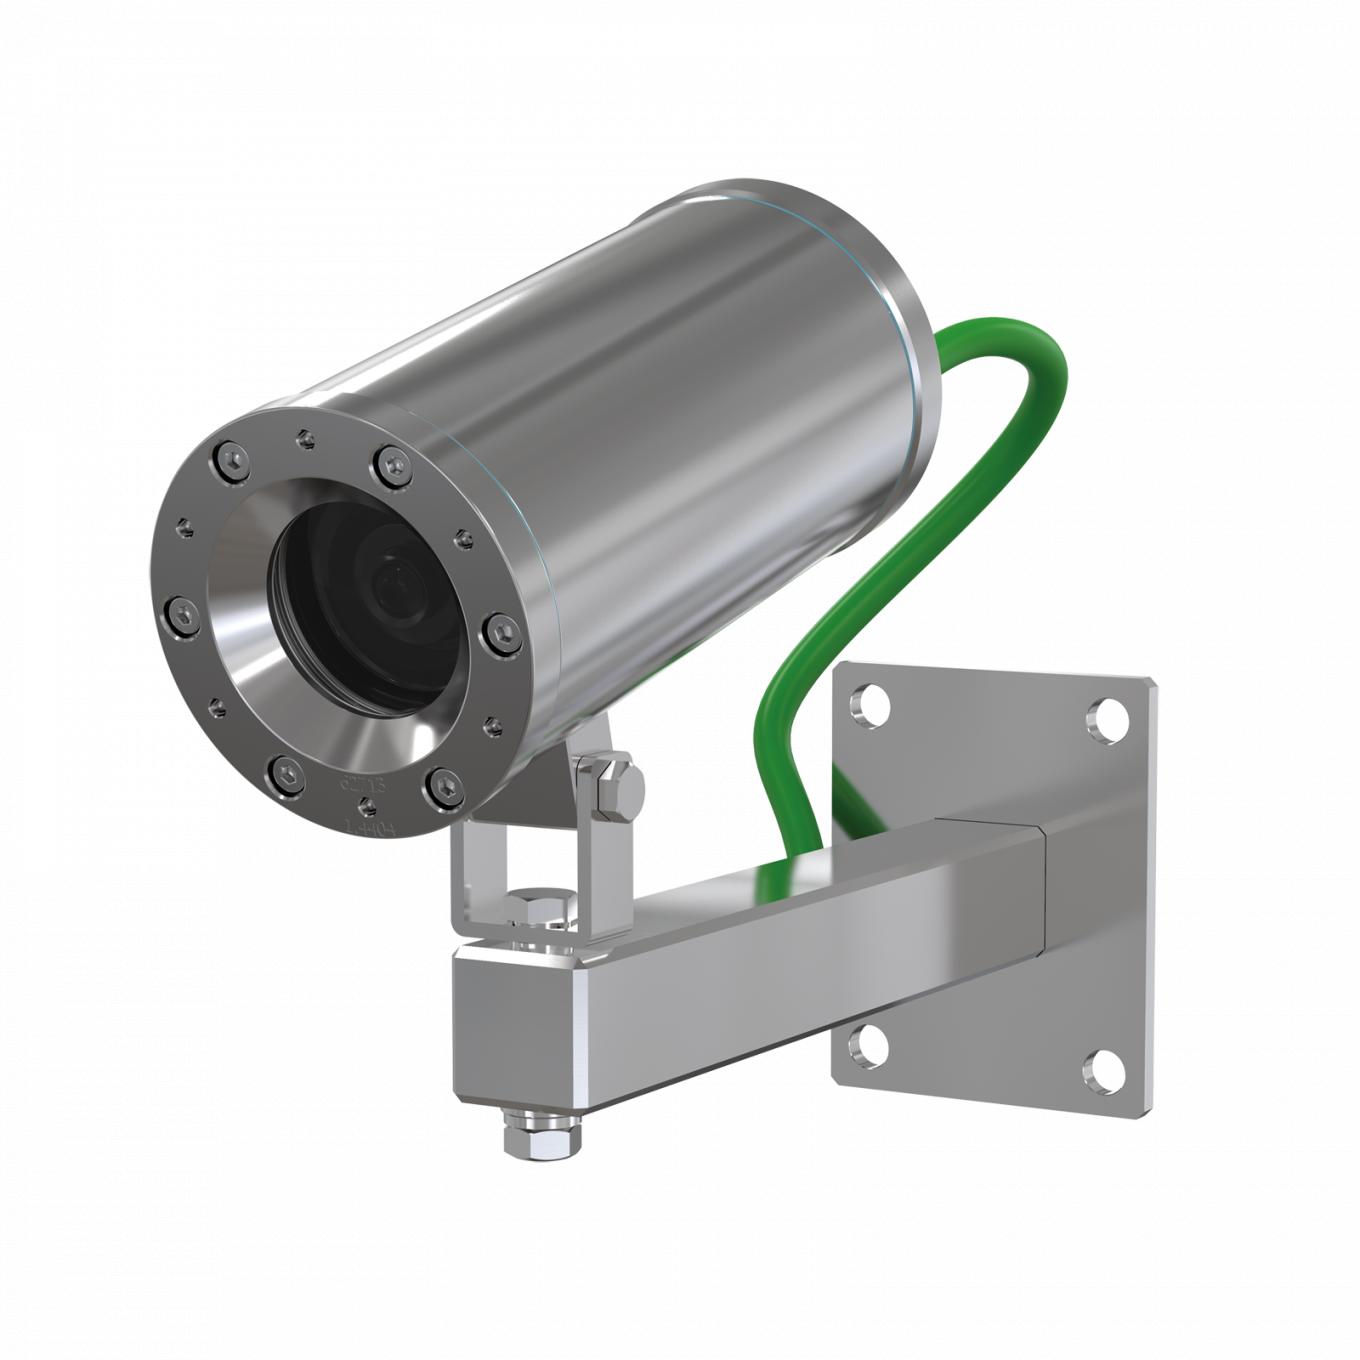 ExCam XF M3016 Explosion-Protected IP Camera цвета нержавеющей стали, установленная на стене